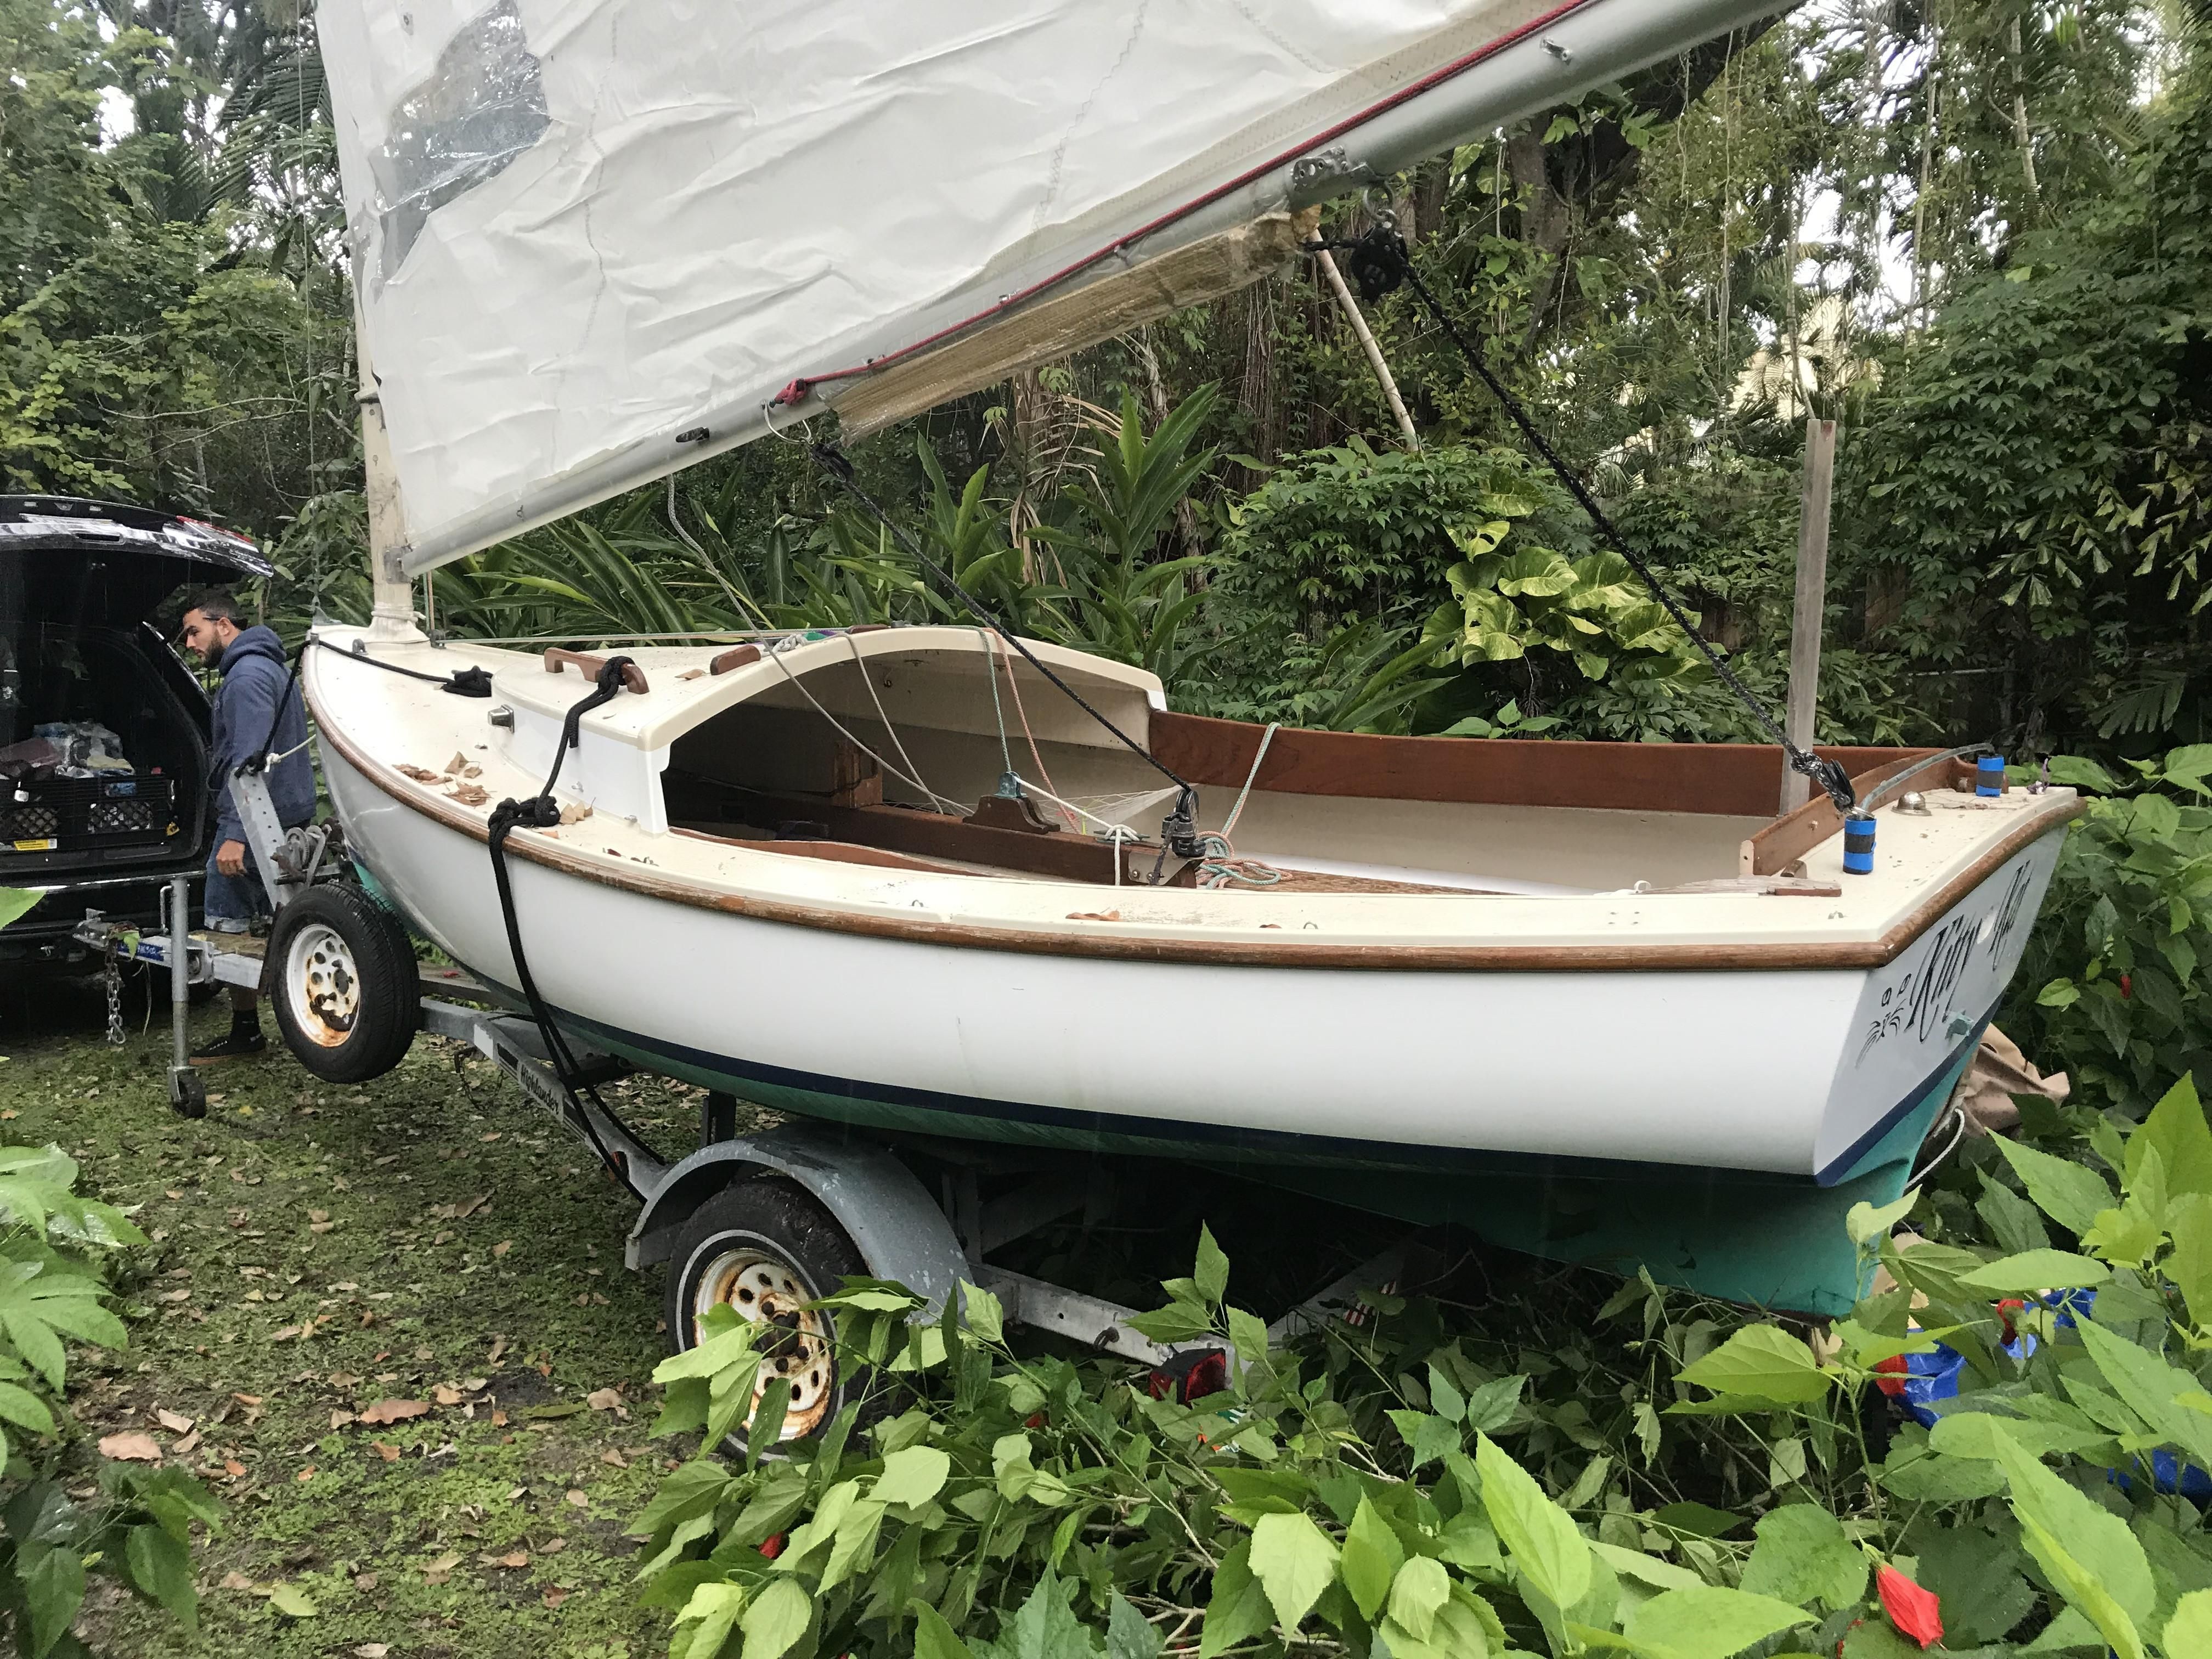 sandpiper sailboat for sale ontario